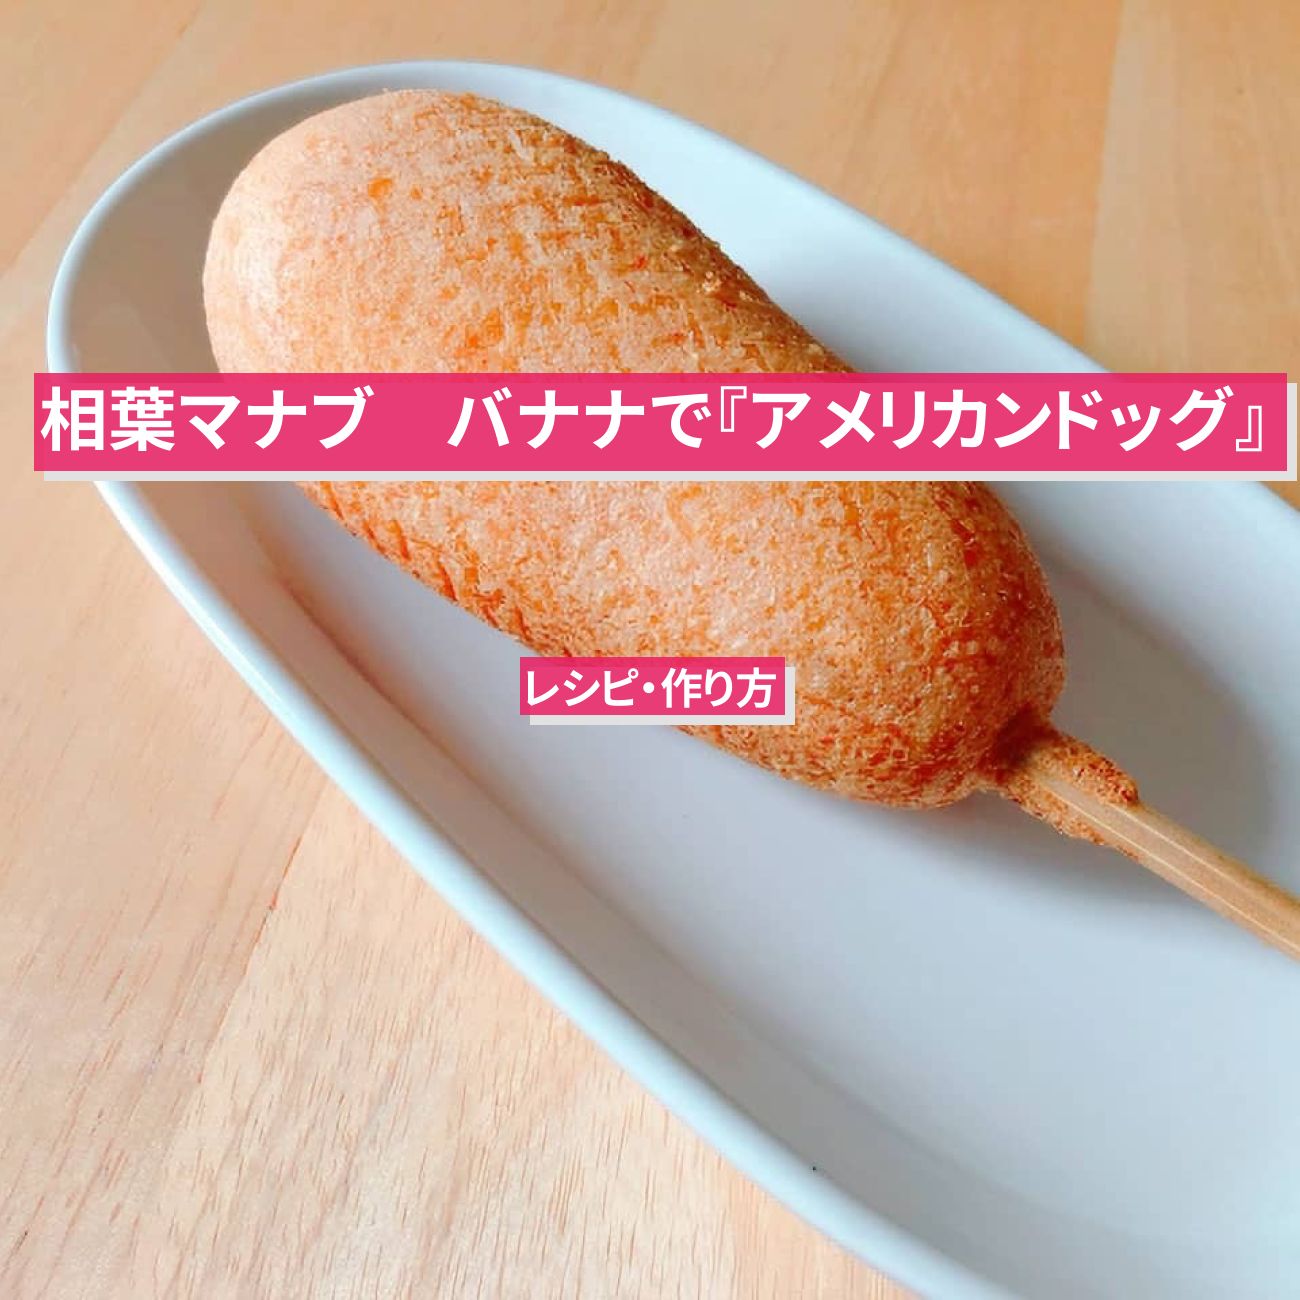 【相葉マナブ】バナナで『アメリカンドッグ』日本橋ゆかり野永喜三夫さんのレシピ・作り方